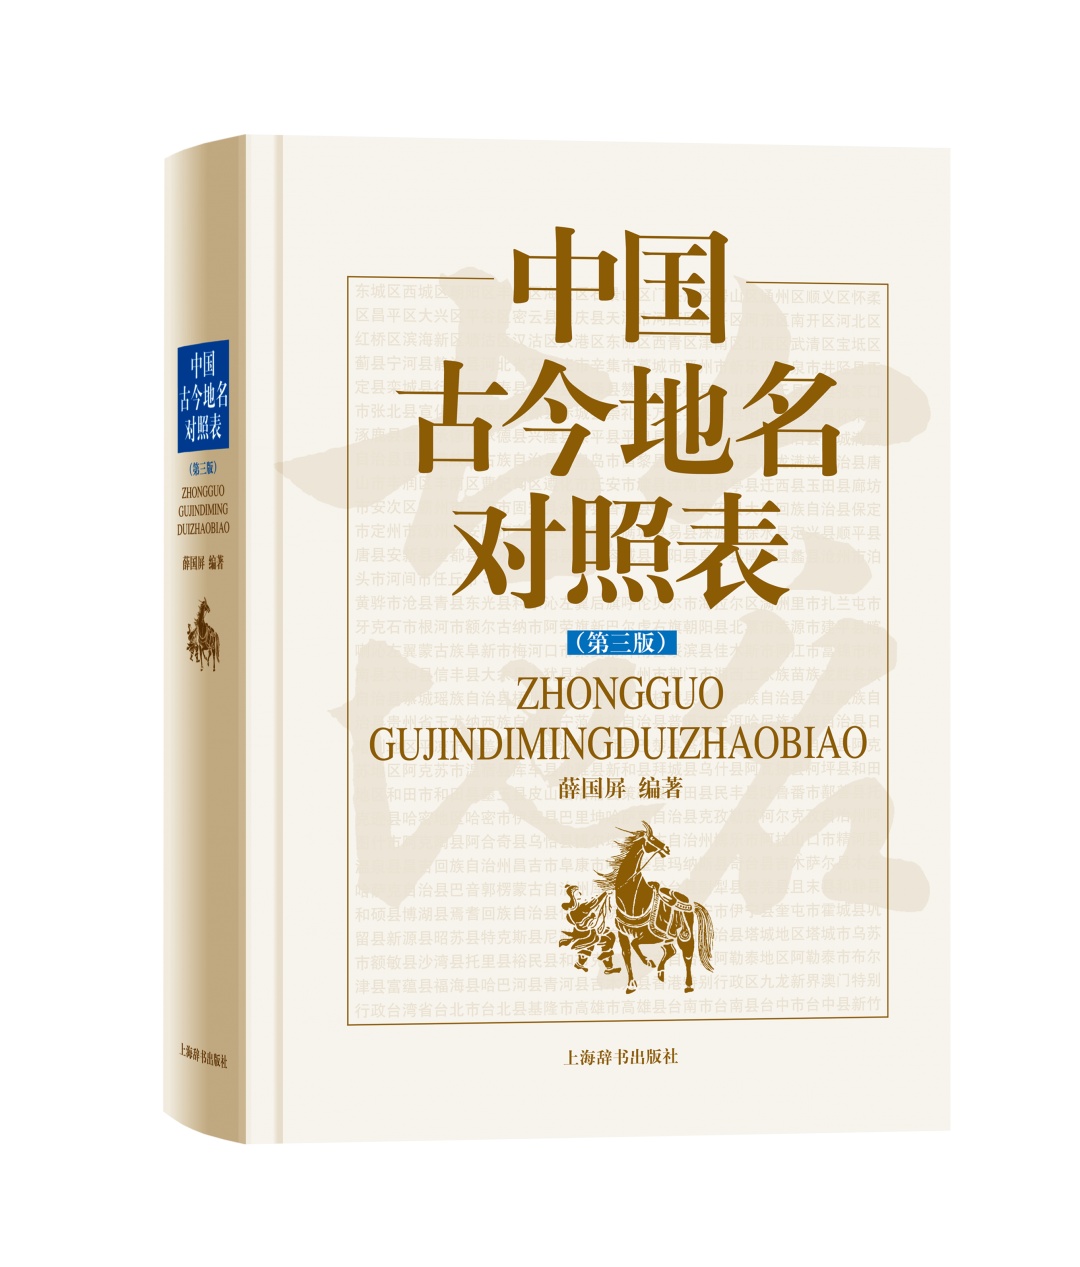 好书·书单丨上海辞书出版社2020年度十大图书